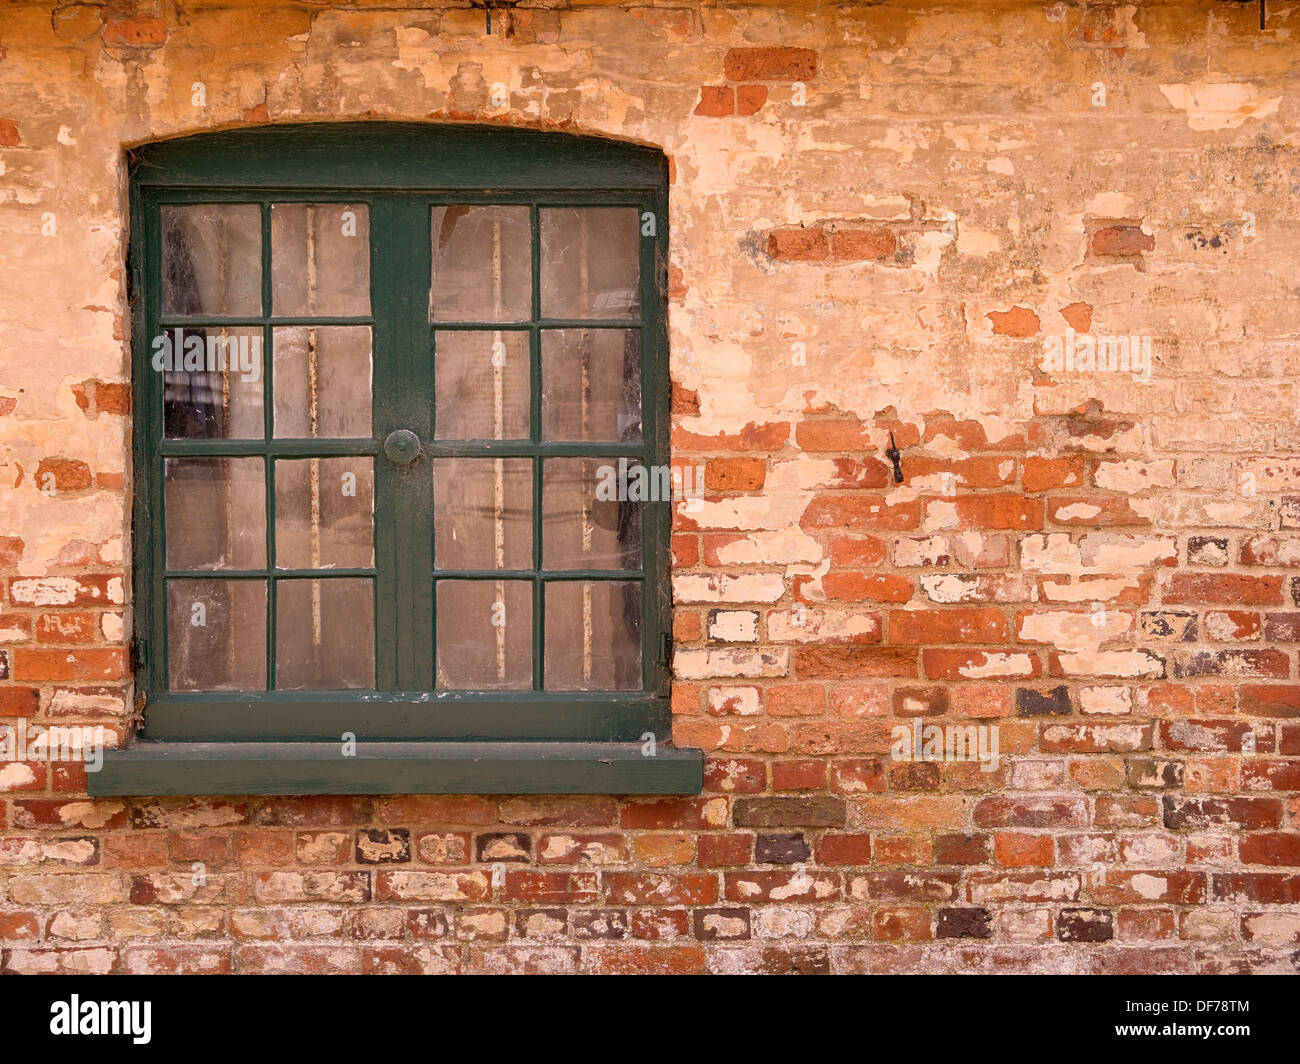 6 Fenêtres En Verre Cintré Dans Un Mur En Brique Rouge Image stock - Image  du pierre, décoration: 215153993